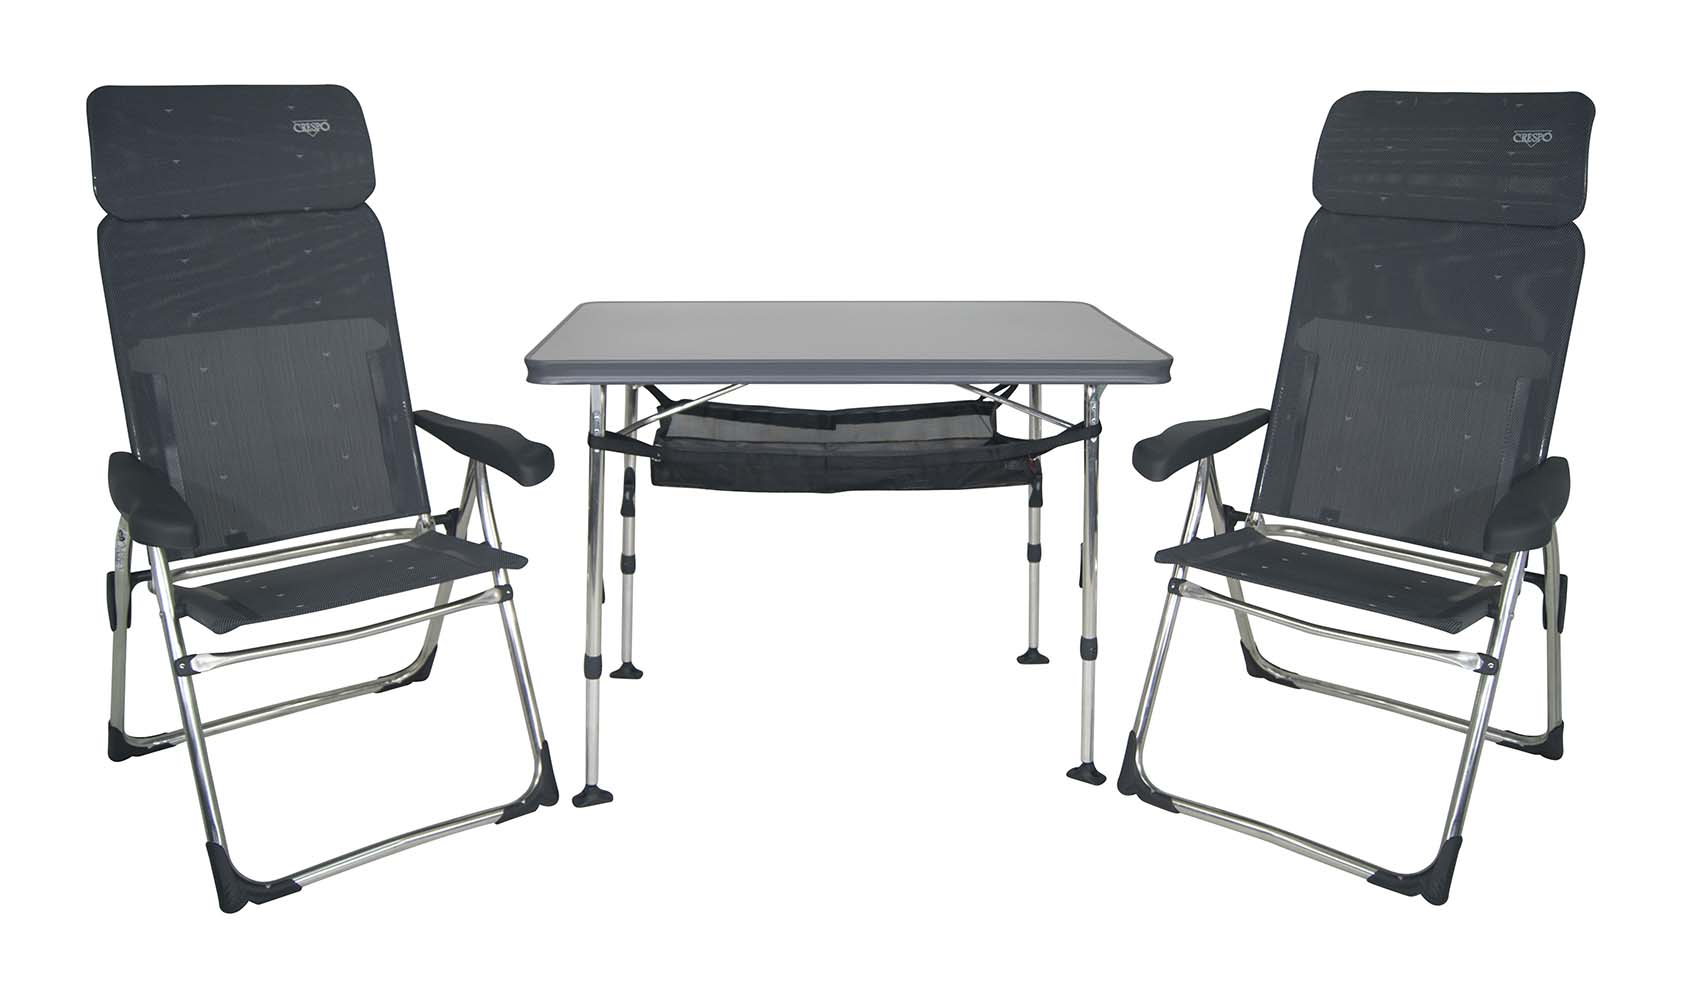 1153850 Een set bestaande uit 2 AL-213 Classic Compact stoelen, een tafel AL-246 met opbergnet en opberghoes.Zeer compacte en ideale set voor 2 personen. De set is zeer compact mee te nemen. Inclusief opberghoes.In totaliteit is de set compact opvouwbaar en maar 16 cm dik.